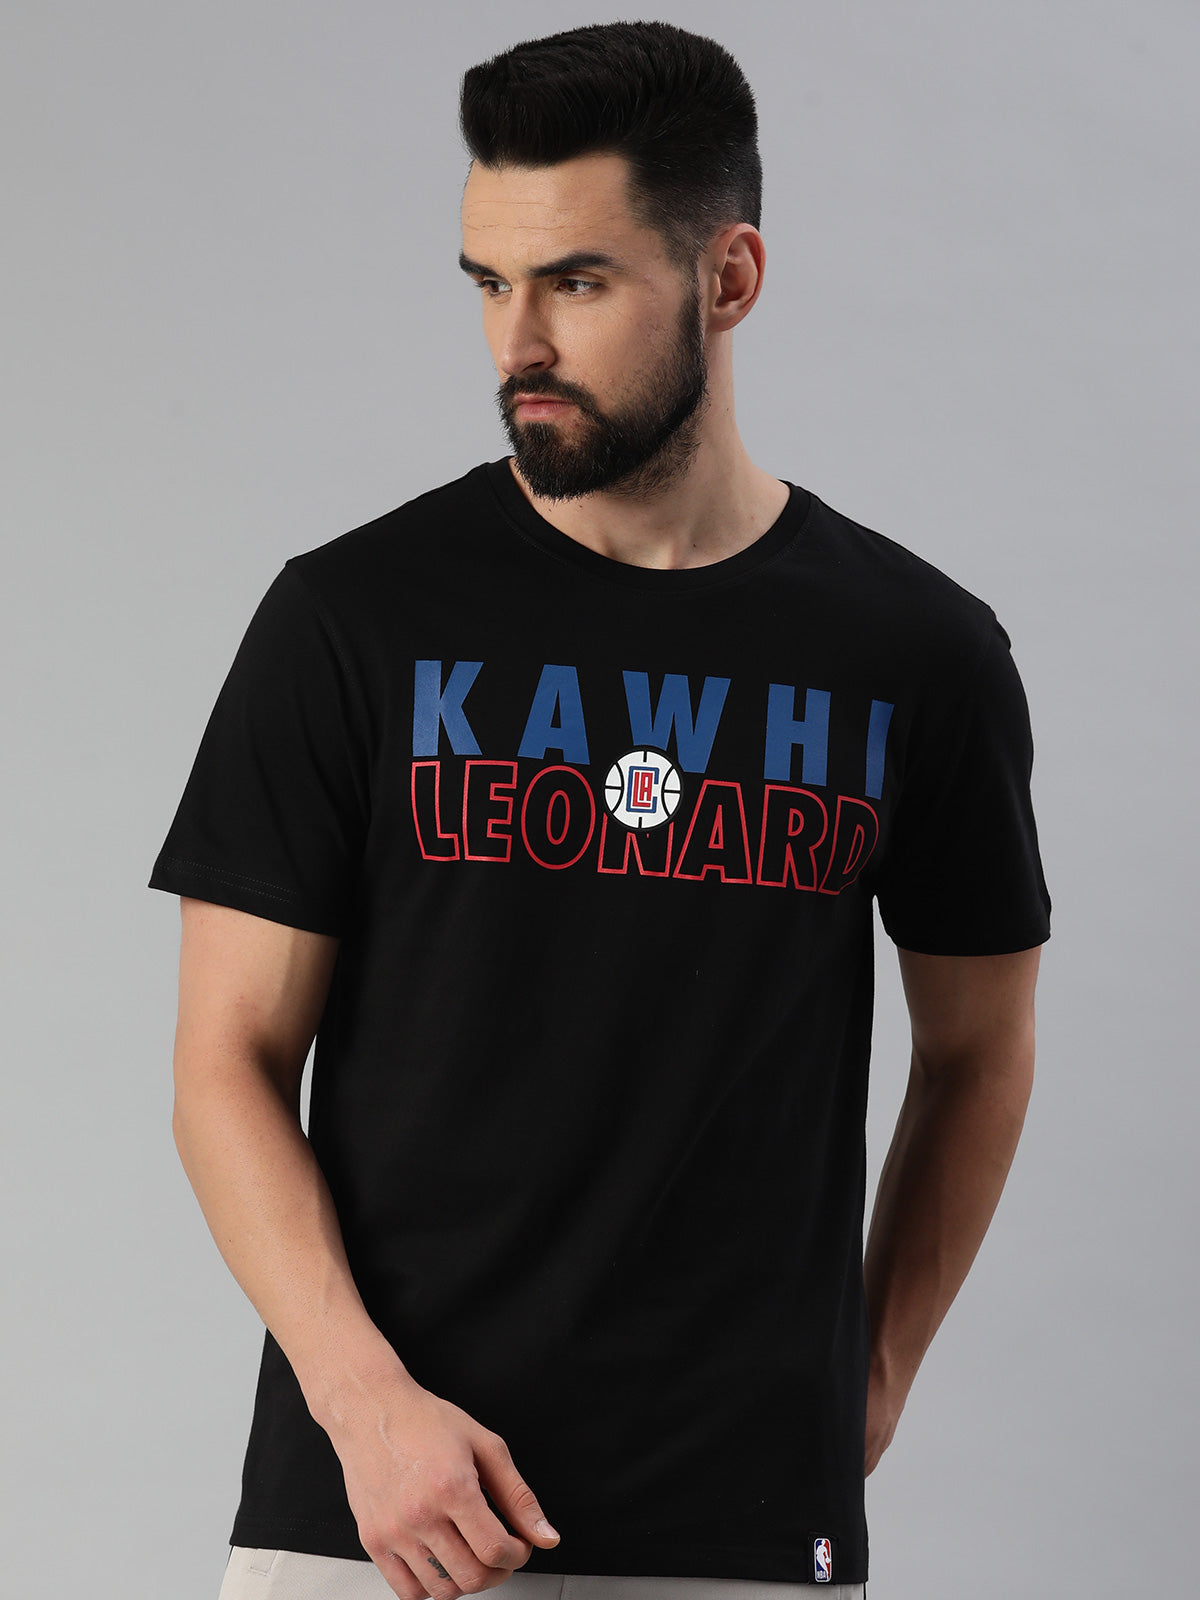 LA Clippers Super-Fan T-Shirt XL / White